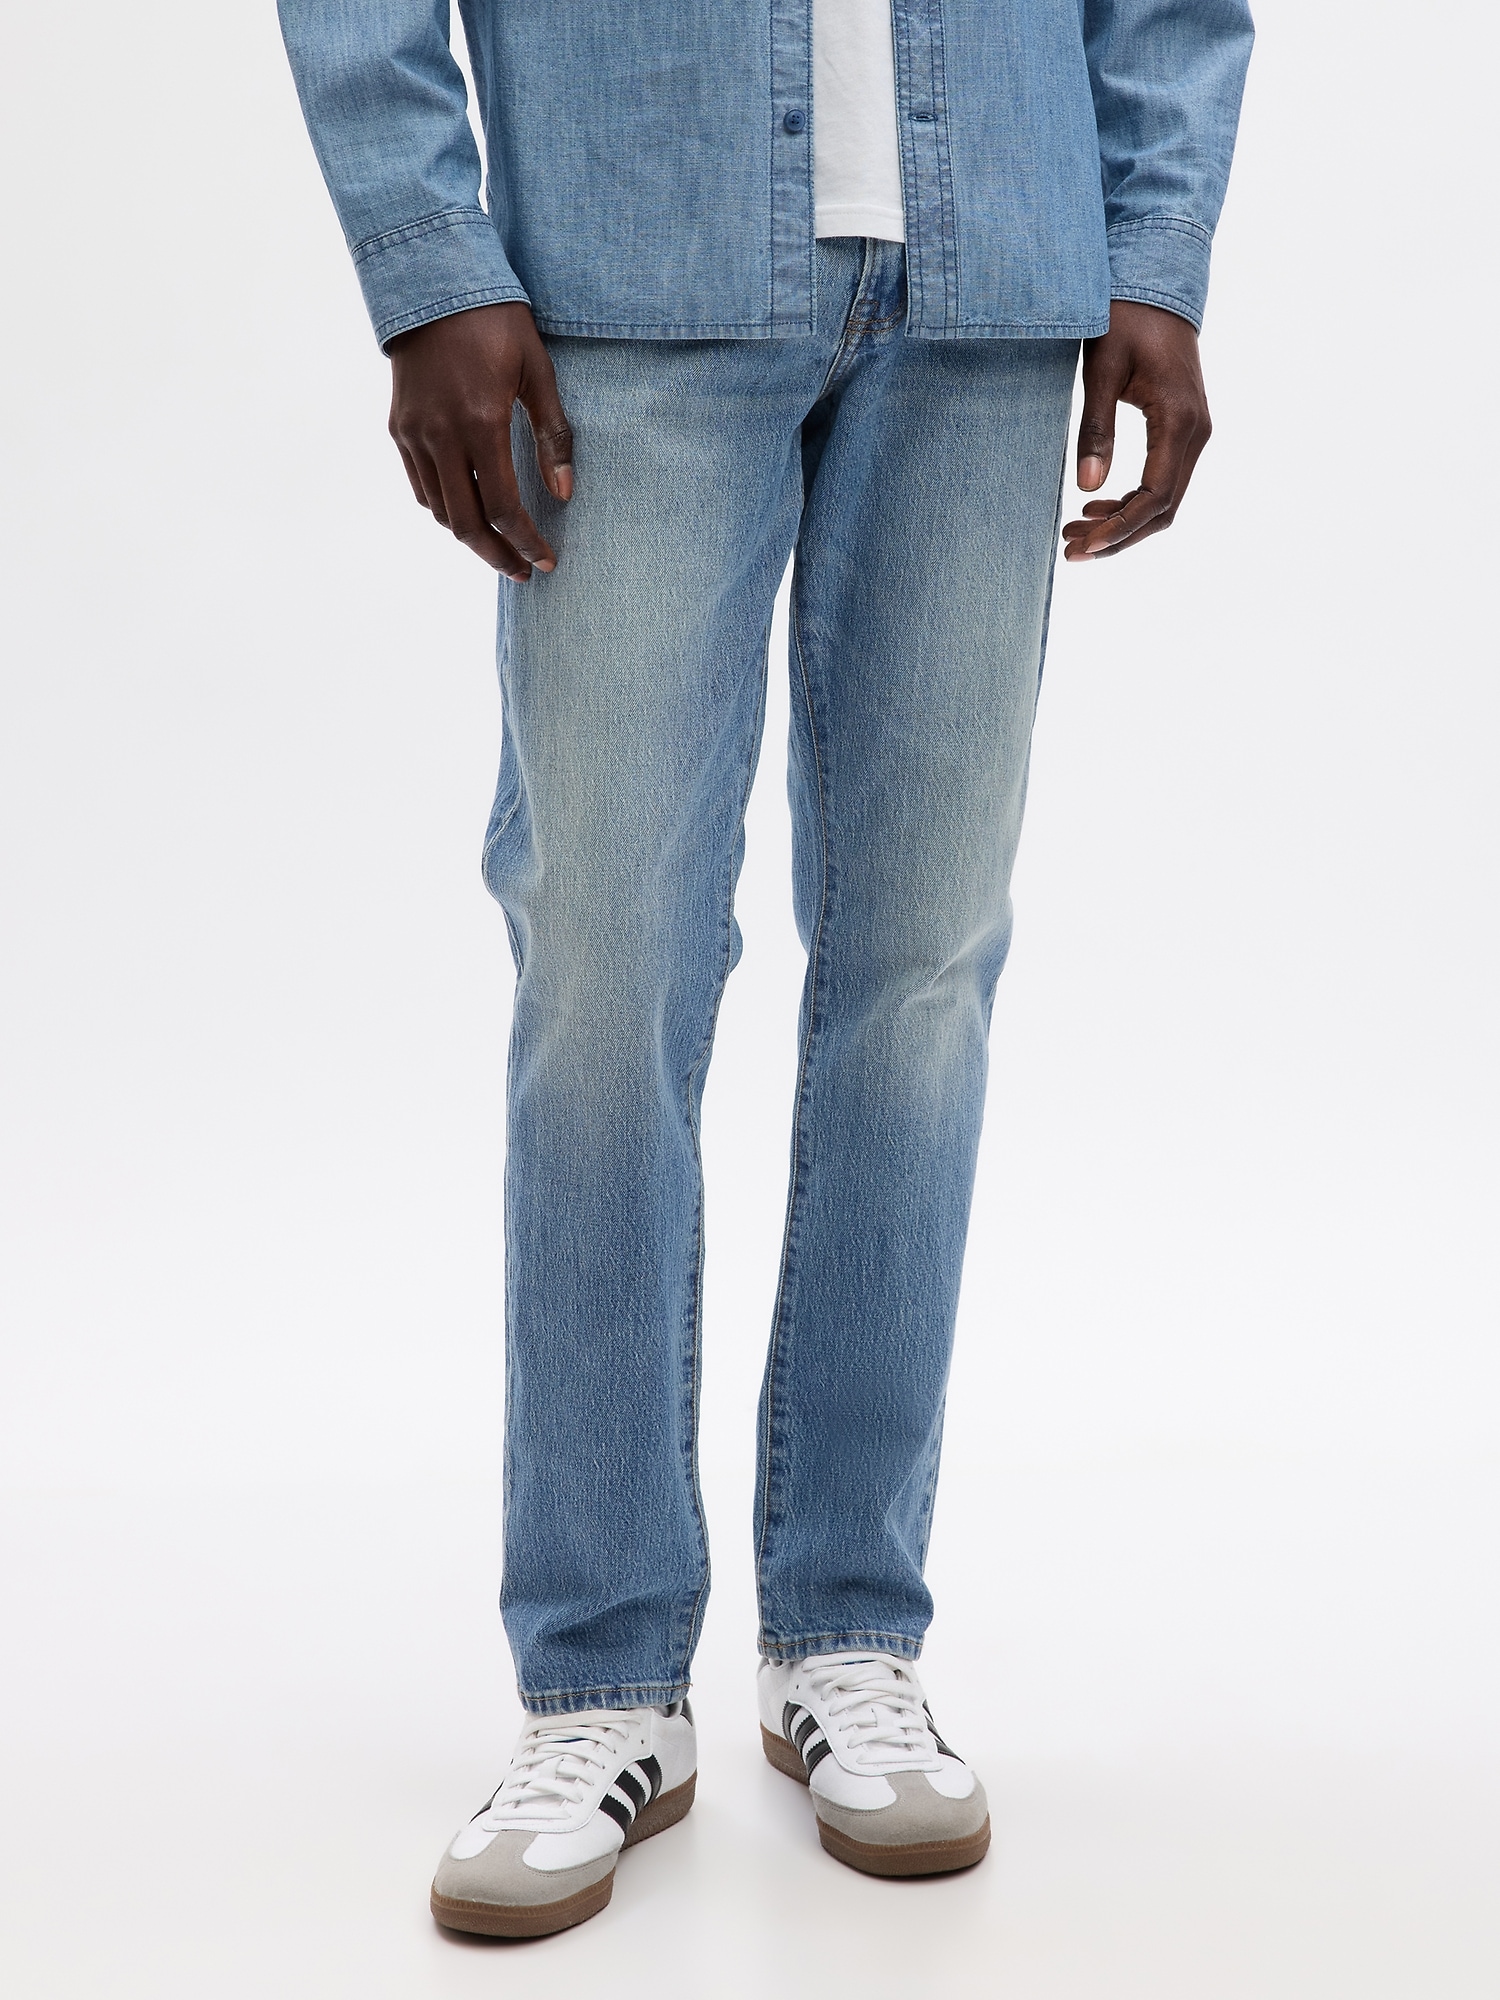 GAP Men's Slim Taper Fit Denim Jeans, Washed Black, 28W x 30L